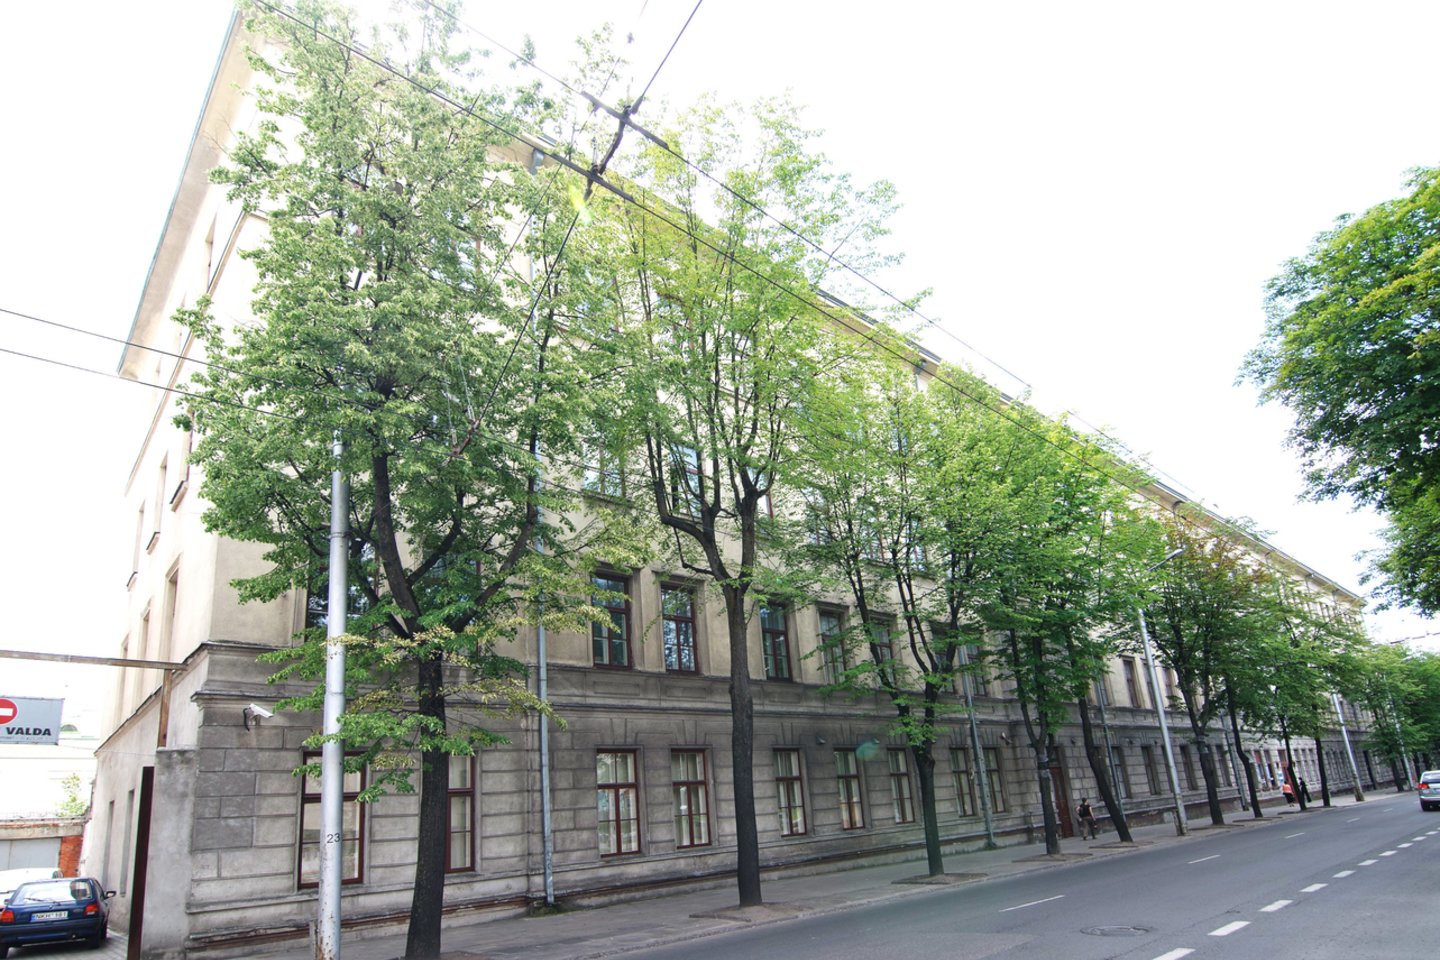   Kauno technologijos universitetas parduos 5 nenaudojamus pastatus.